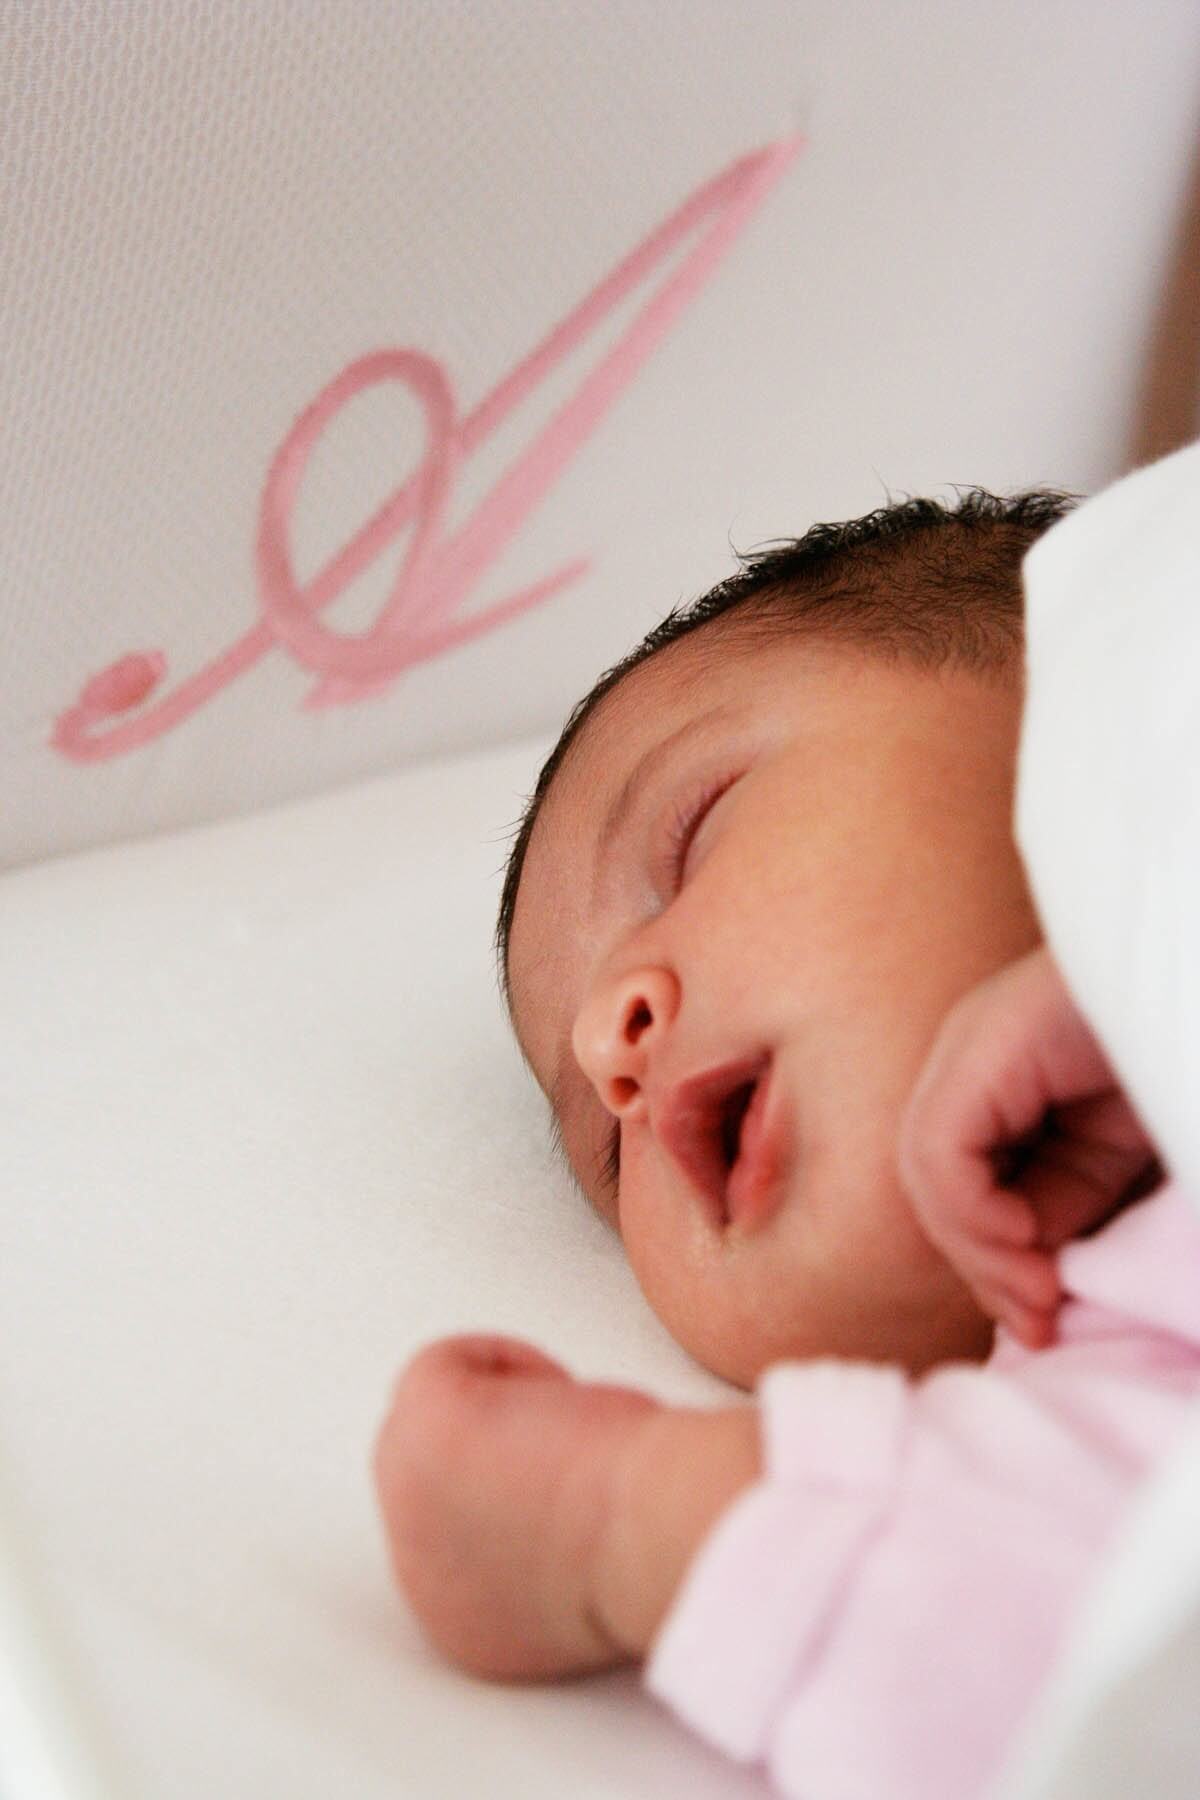 Photo bébé Photos de bébés professionnels en train de dormir contacter Christophe Boury pour une séance photo de votre enfant ou de votre nouveau-né moins cher qu’en maternité